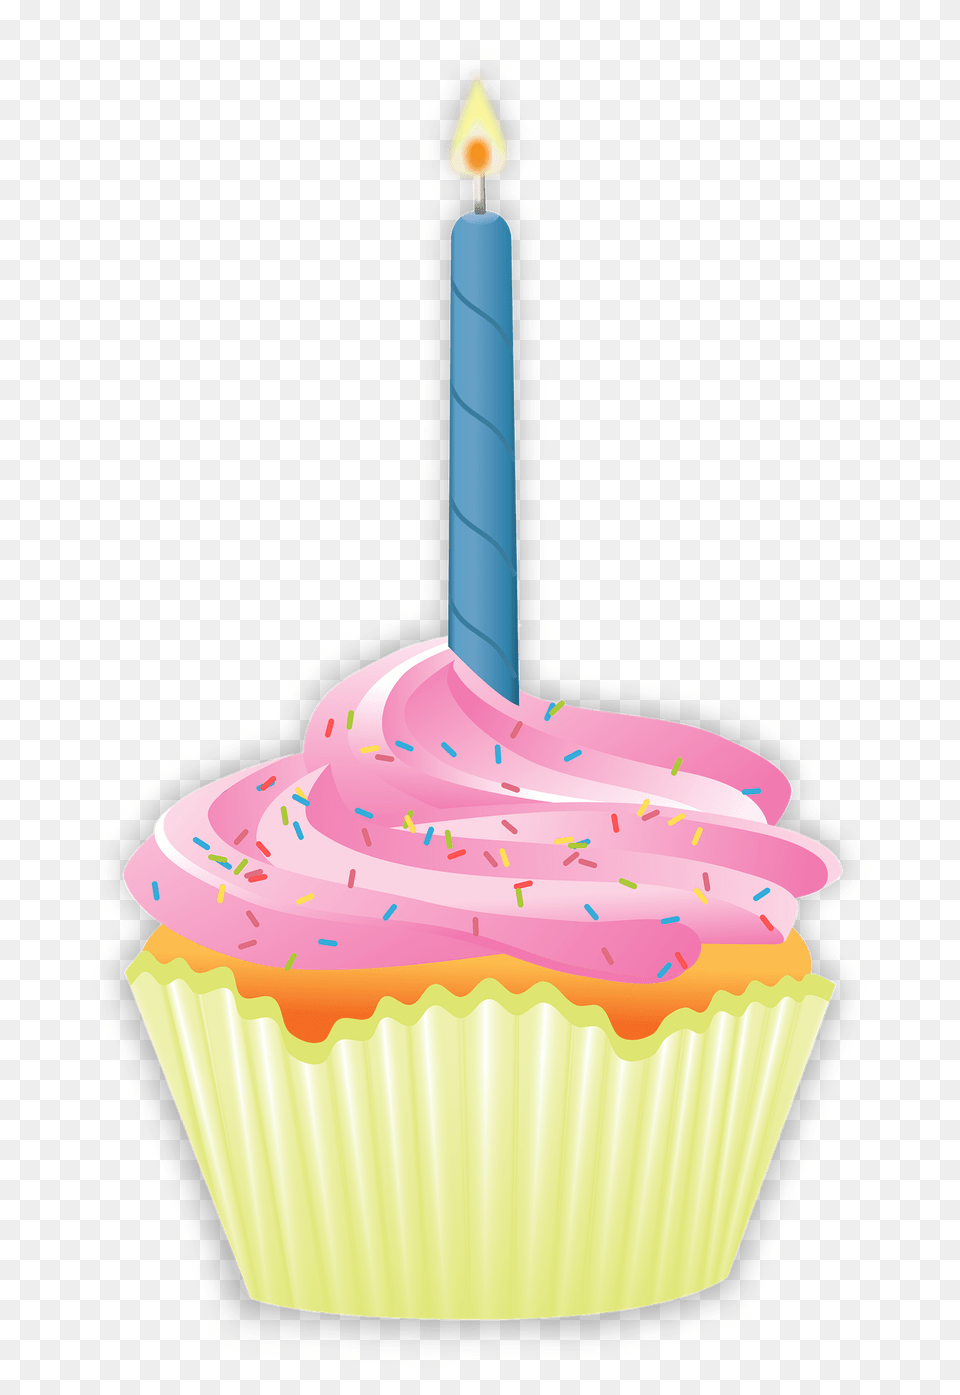 Birthday Cupcake Clipart, Birthday Cake, Cake, Cream, Dessert Png Image